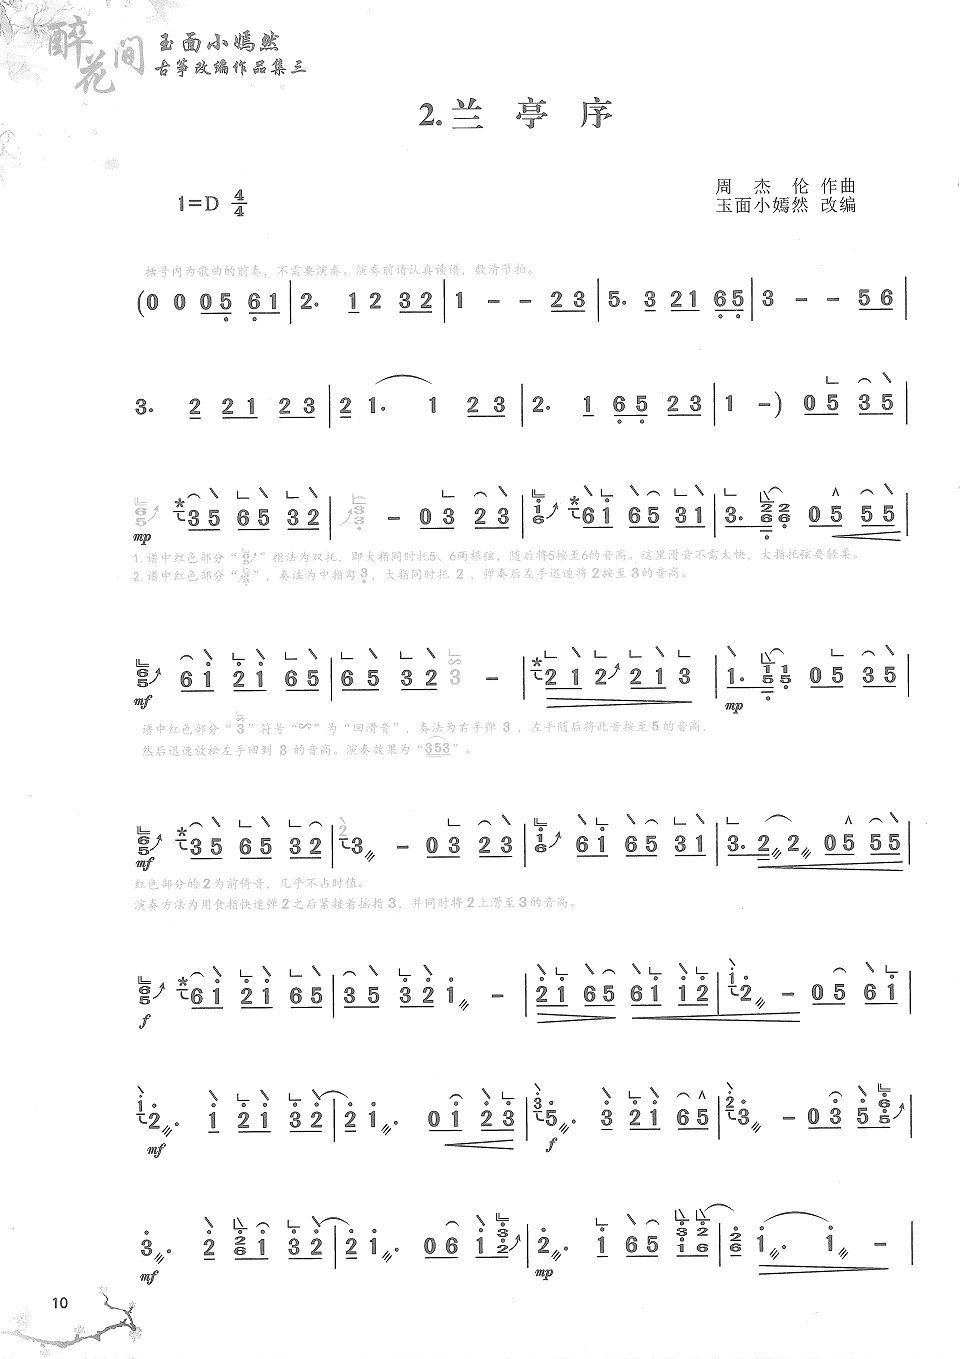 周杰伦《兰亭序》古筝演奏完整版简谱及伴奏